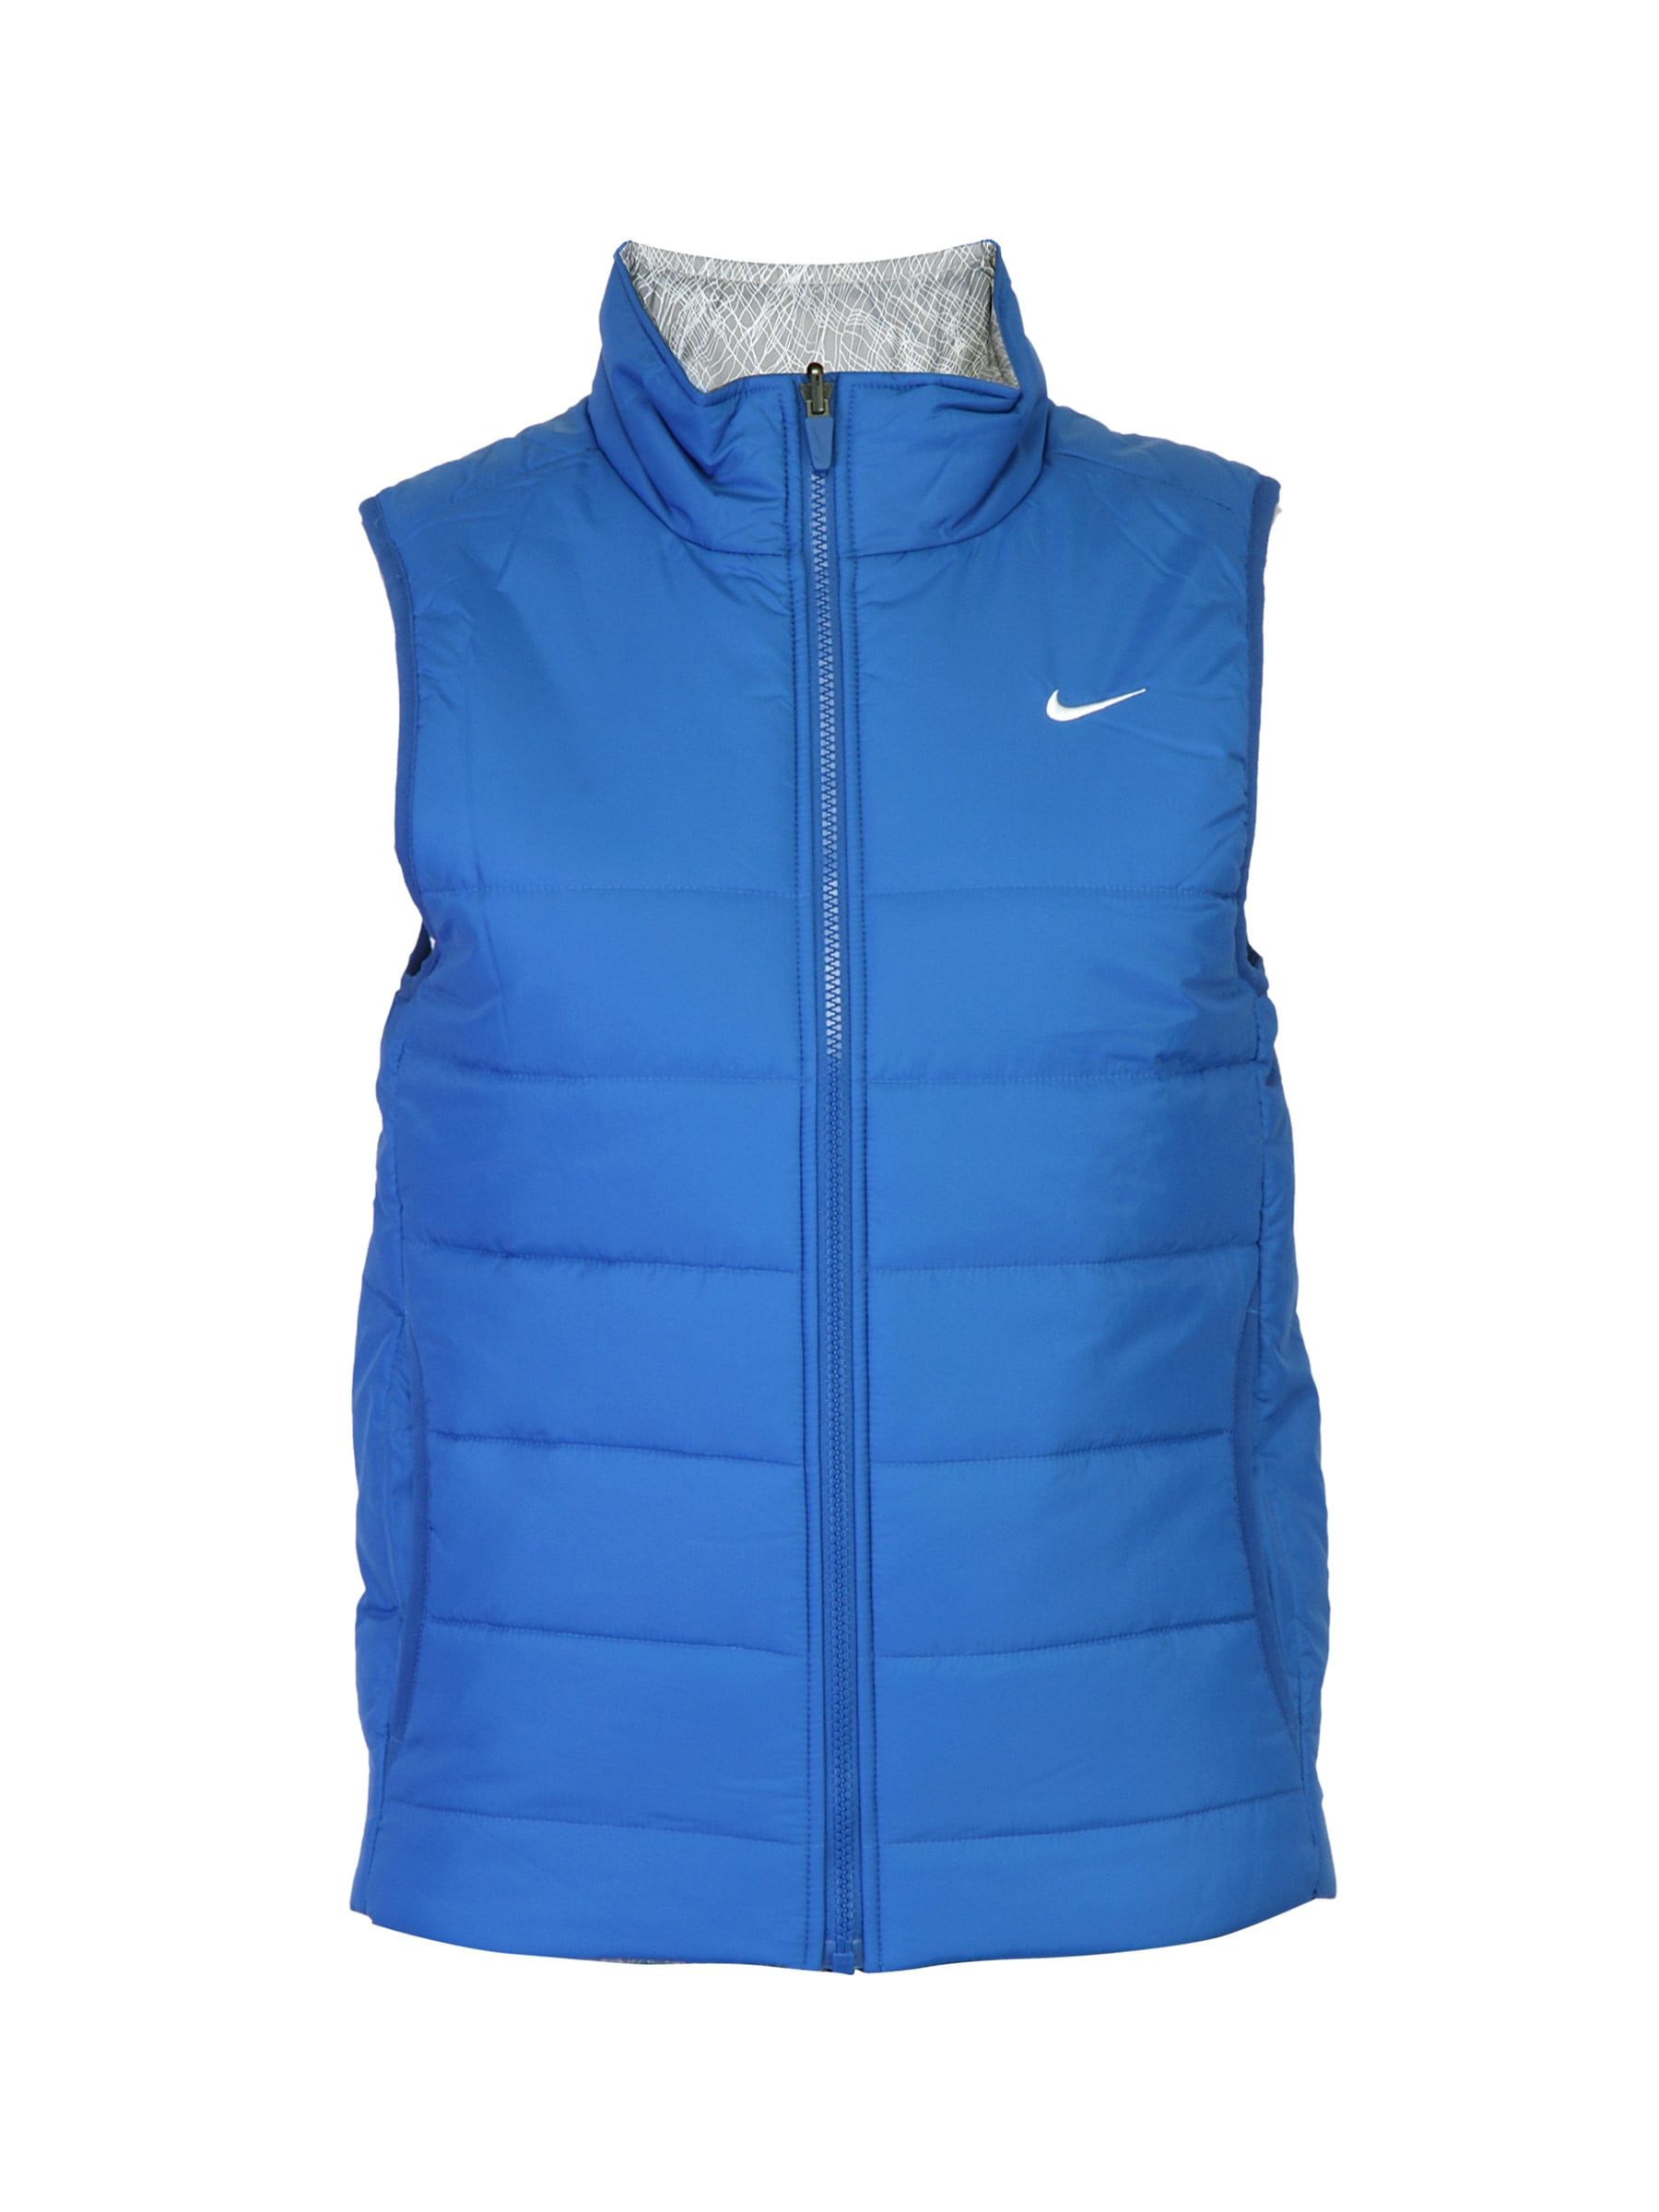 Nike Women Solid Blue Jackets